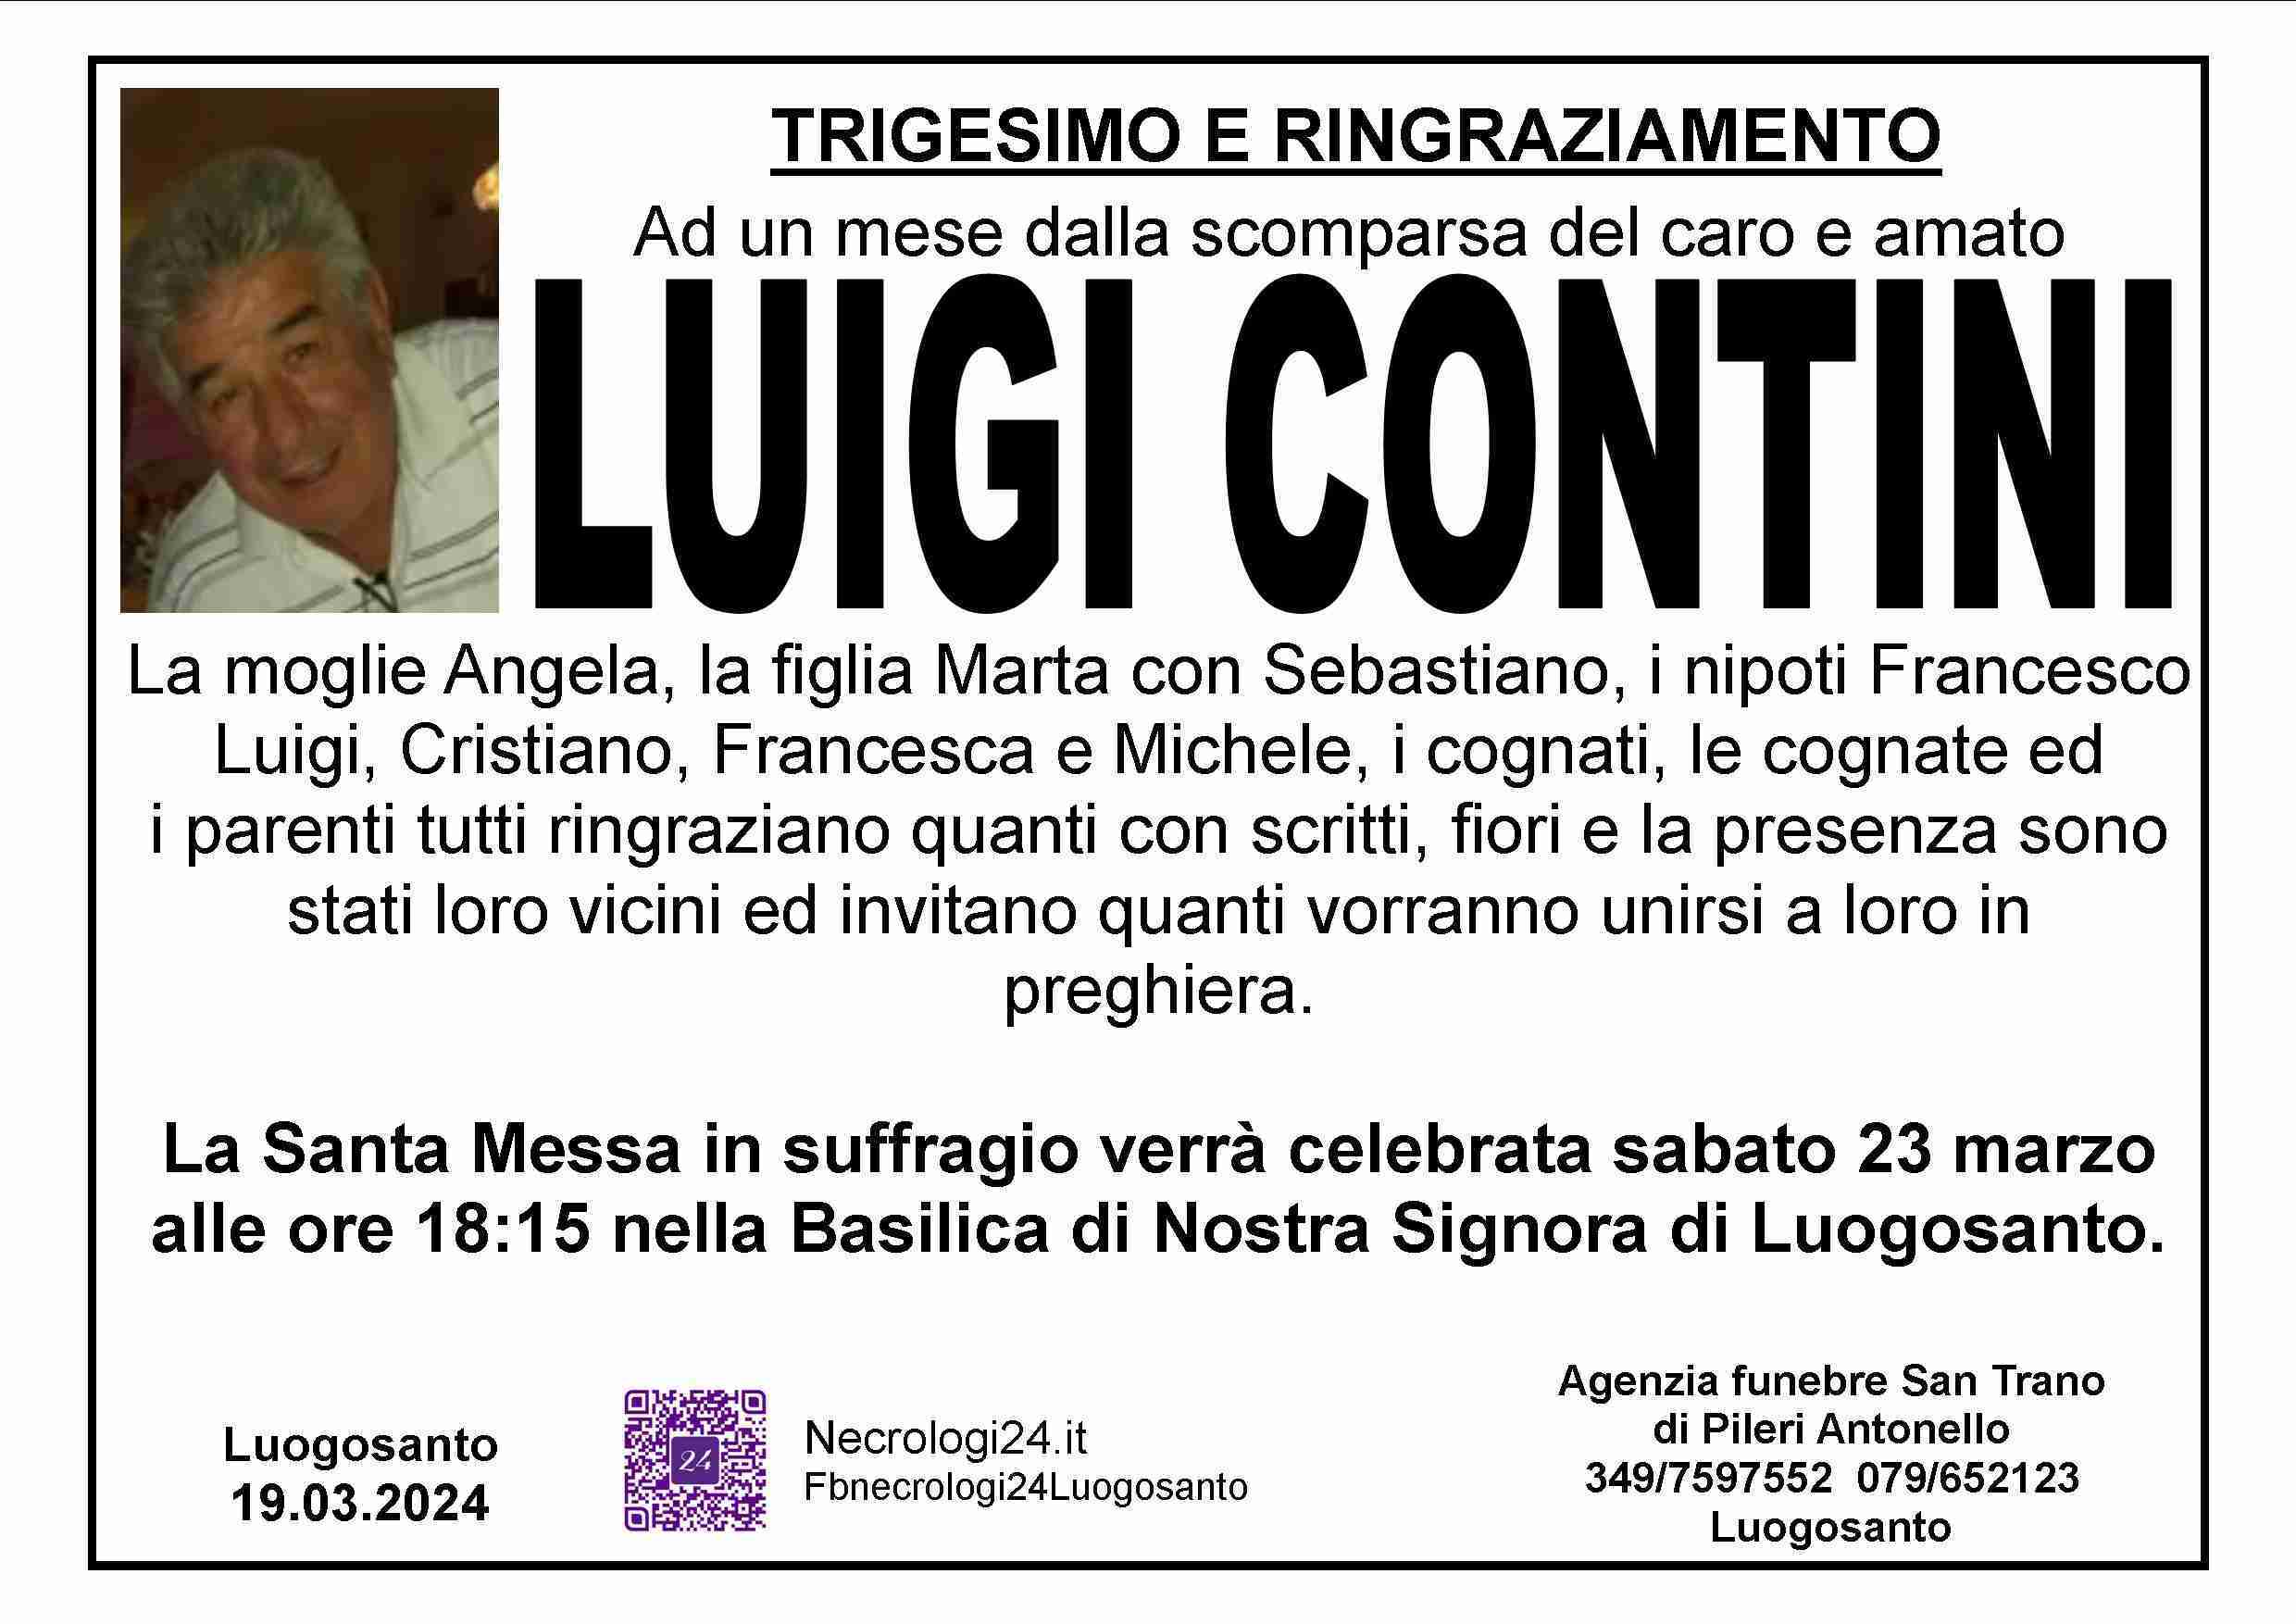 Luigi Contini